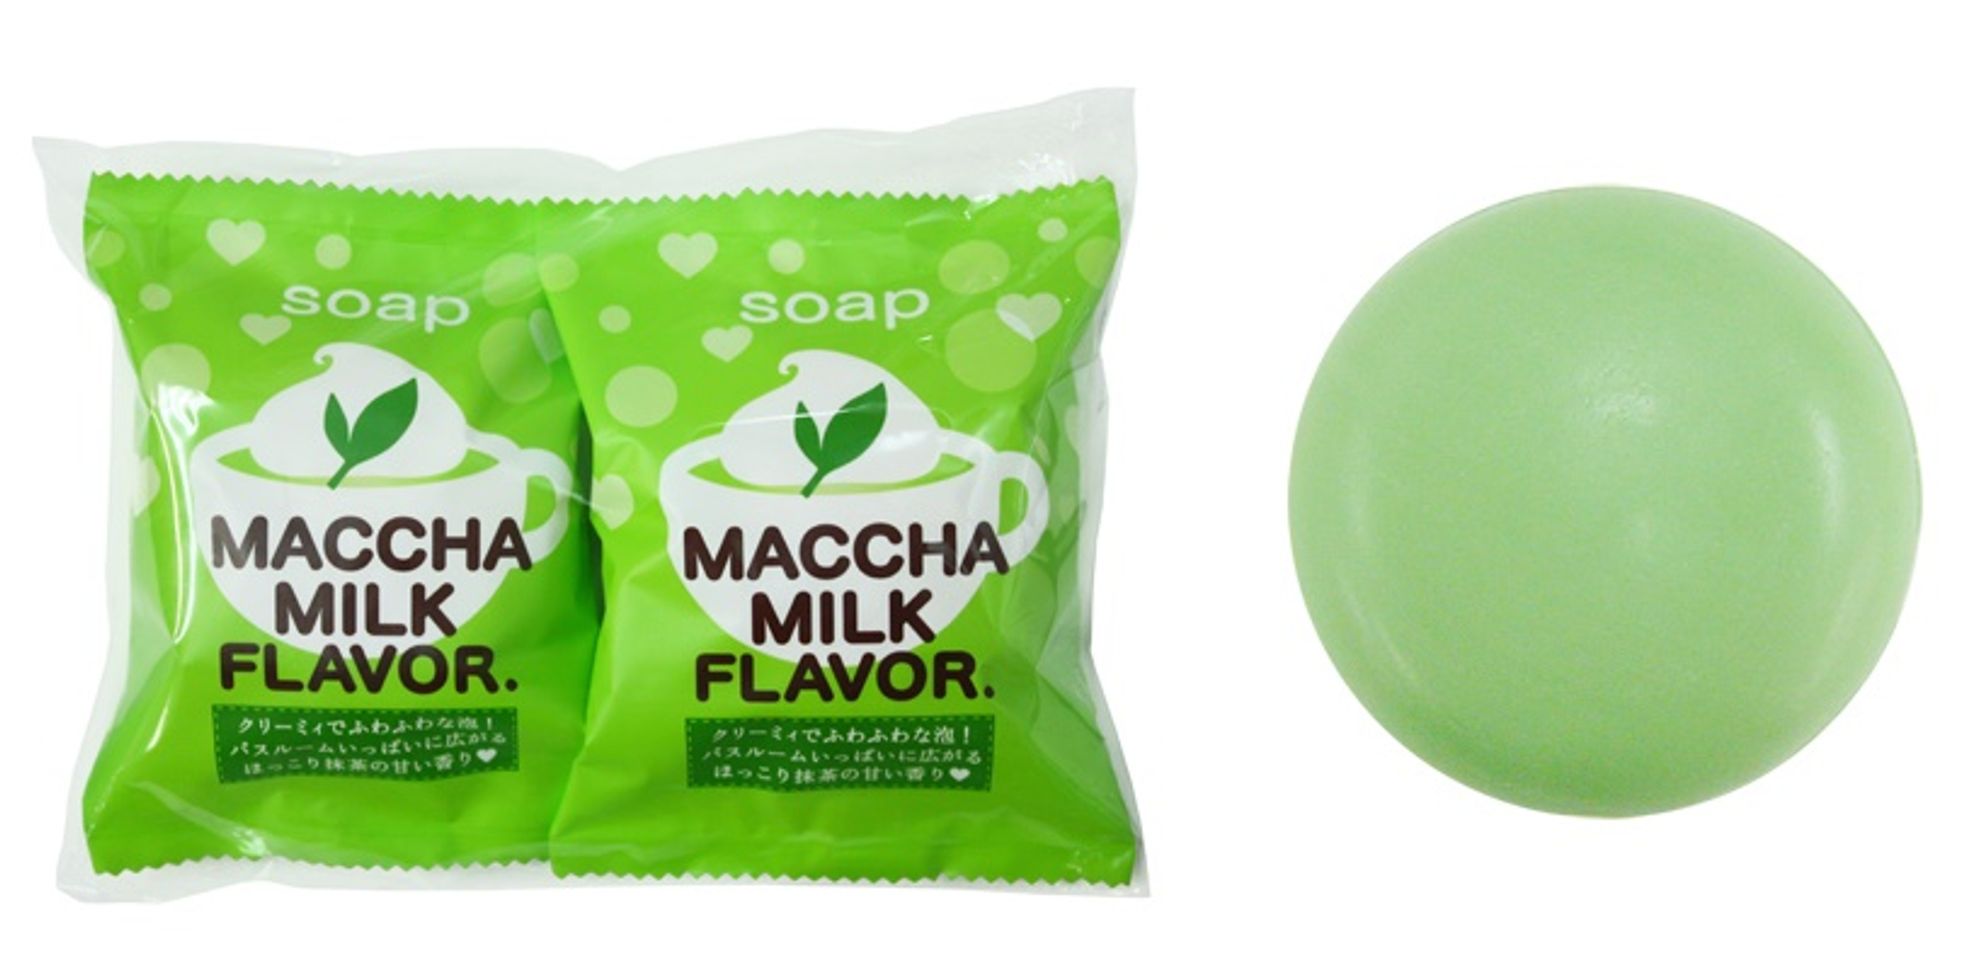 Mùi hương của Maccha Milk Flavor nhẹ nhàng và lan tỏa, mang lại cảm giác dễ chịu